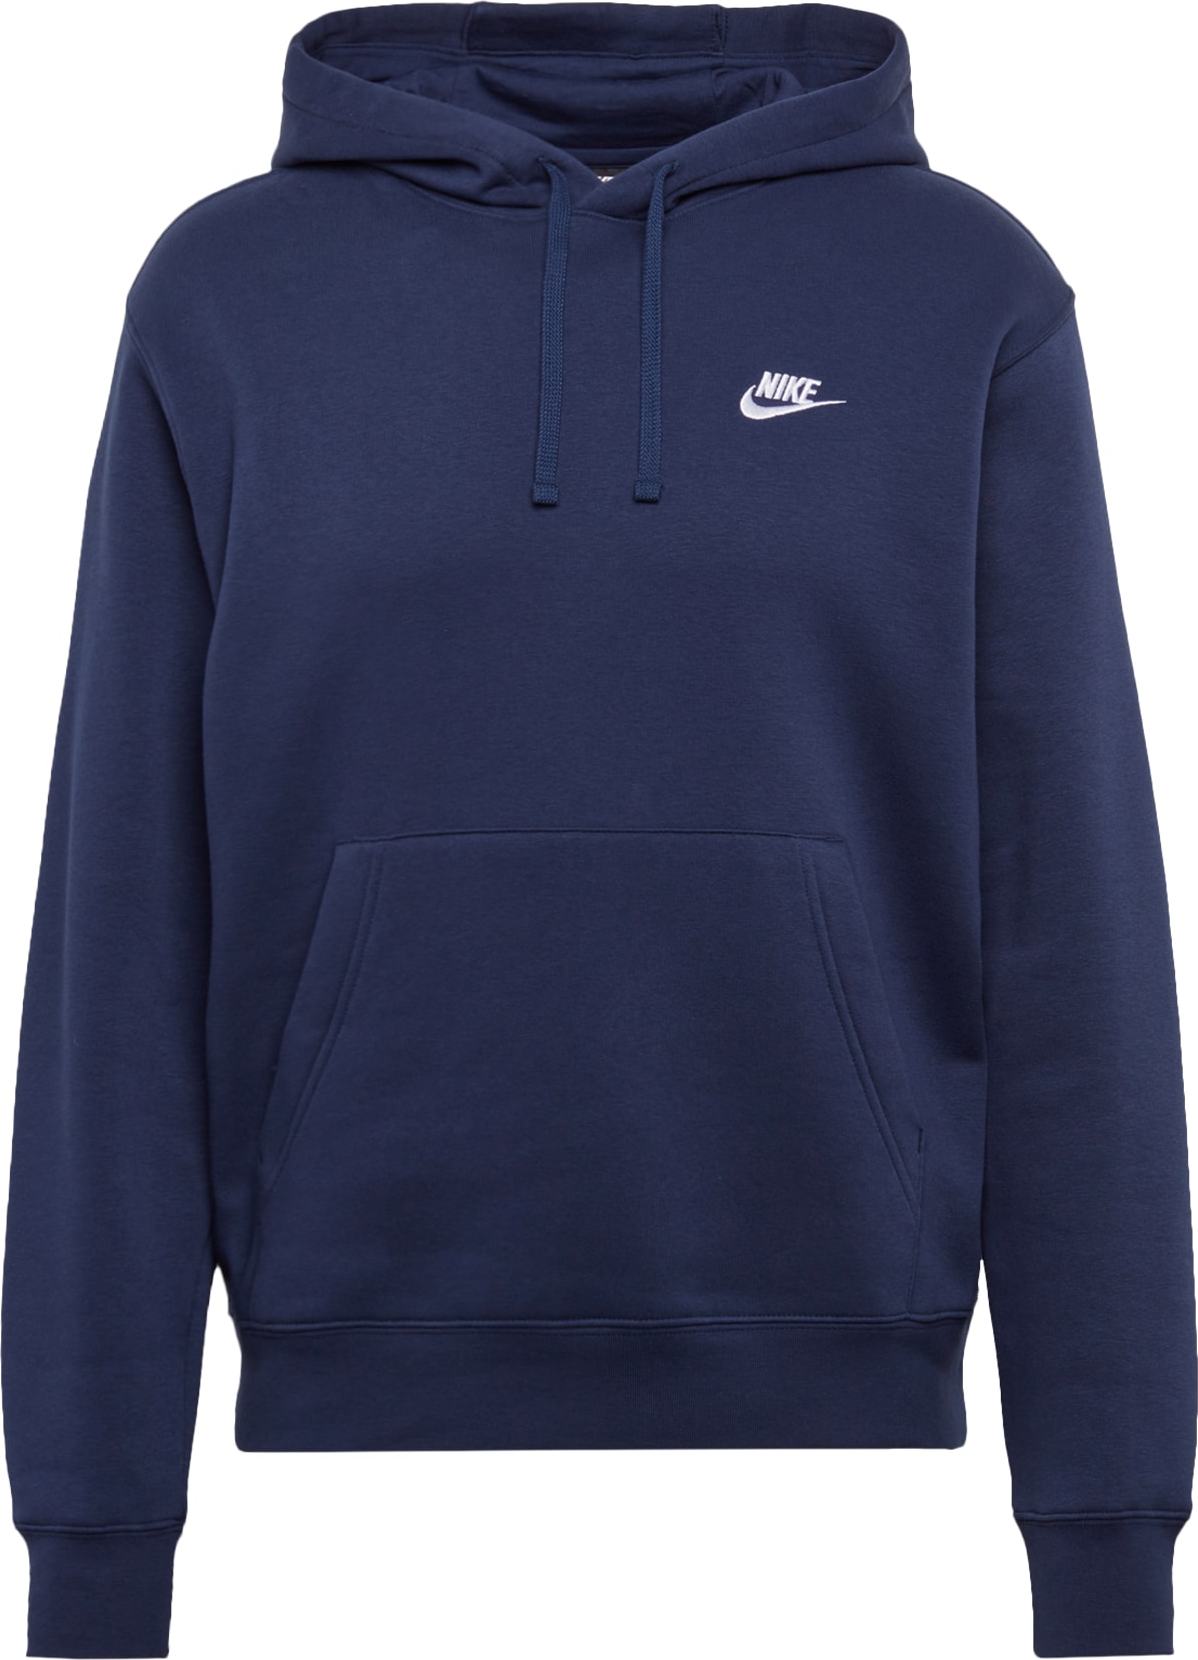 Nike Sportswear Mikina 'Club' tmavě modrá / bílá